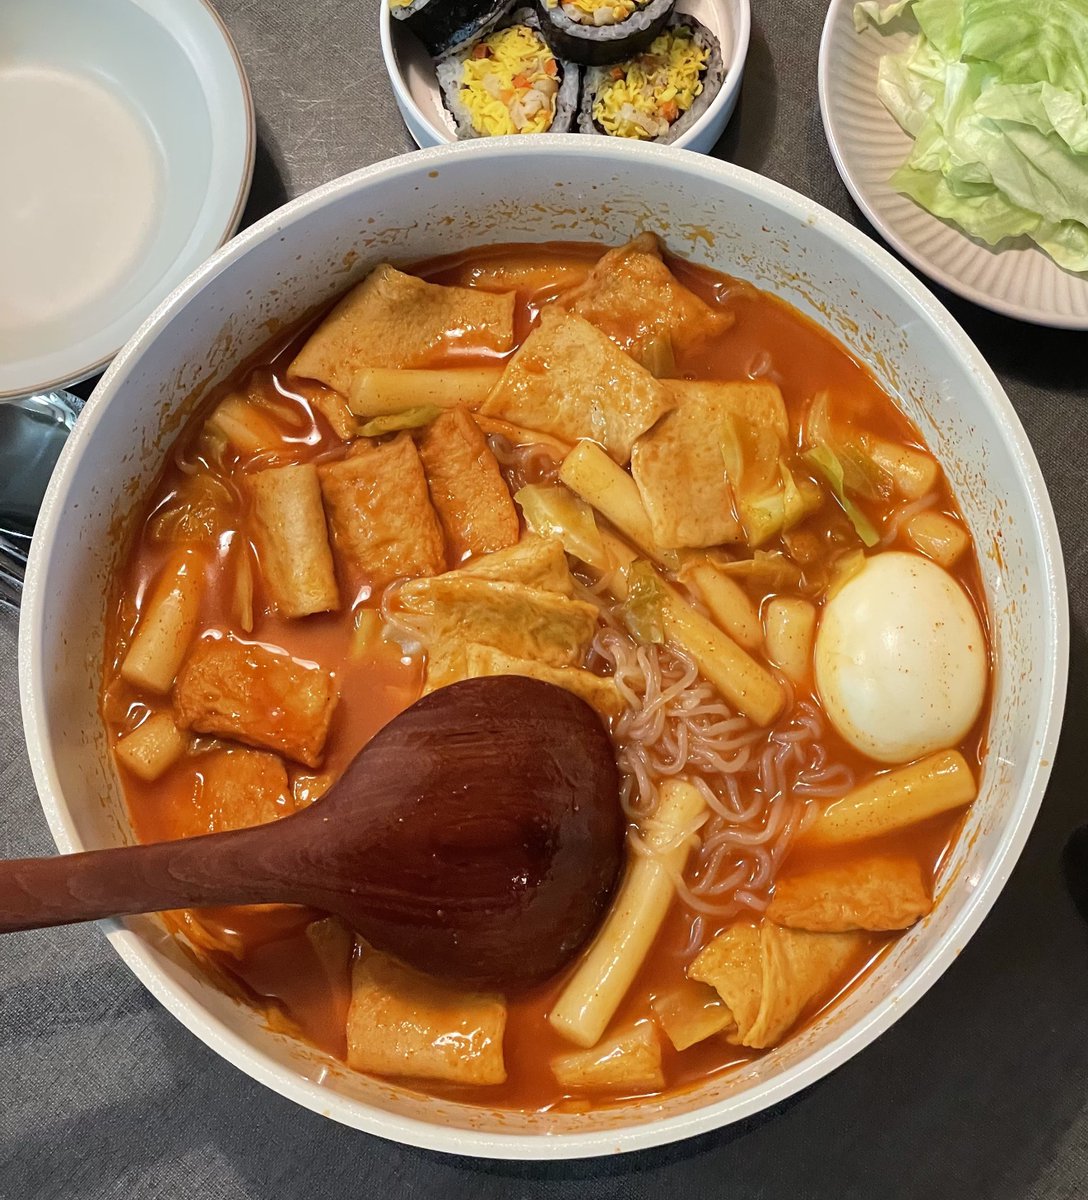 김밥에 떡볶이 국물이 생각나던 날 금미옥 국물떡볶이 꺼내 먹음